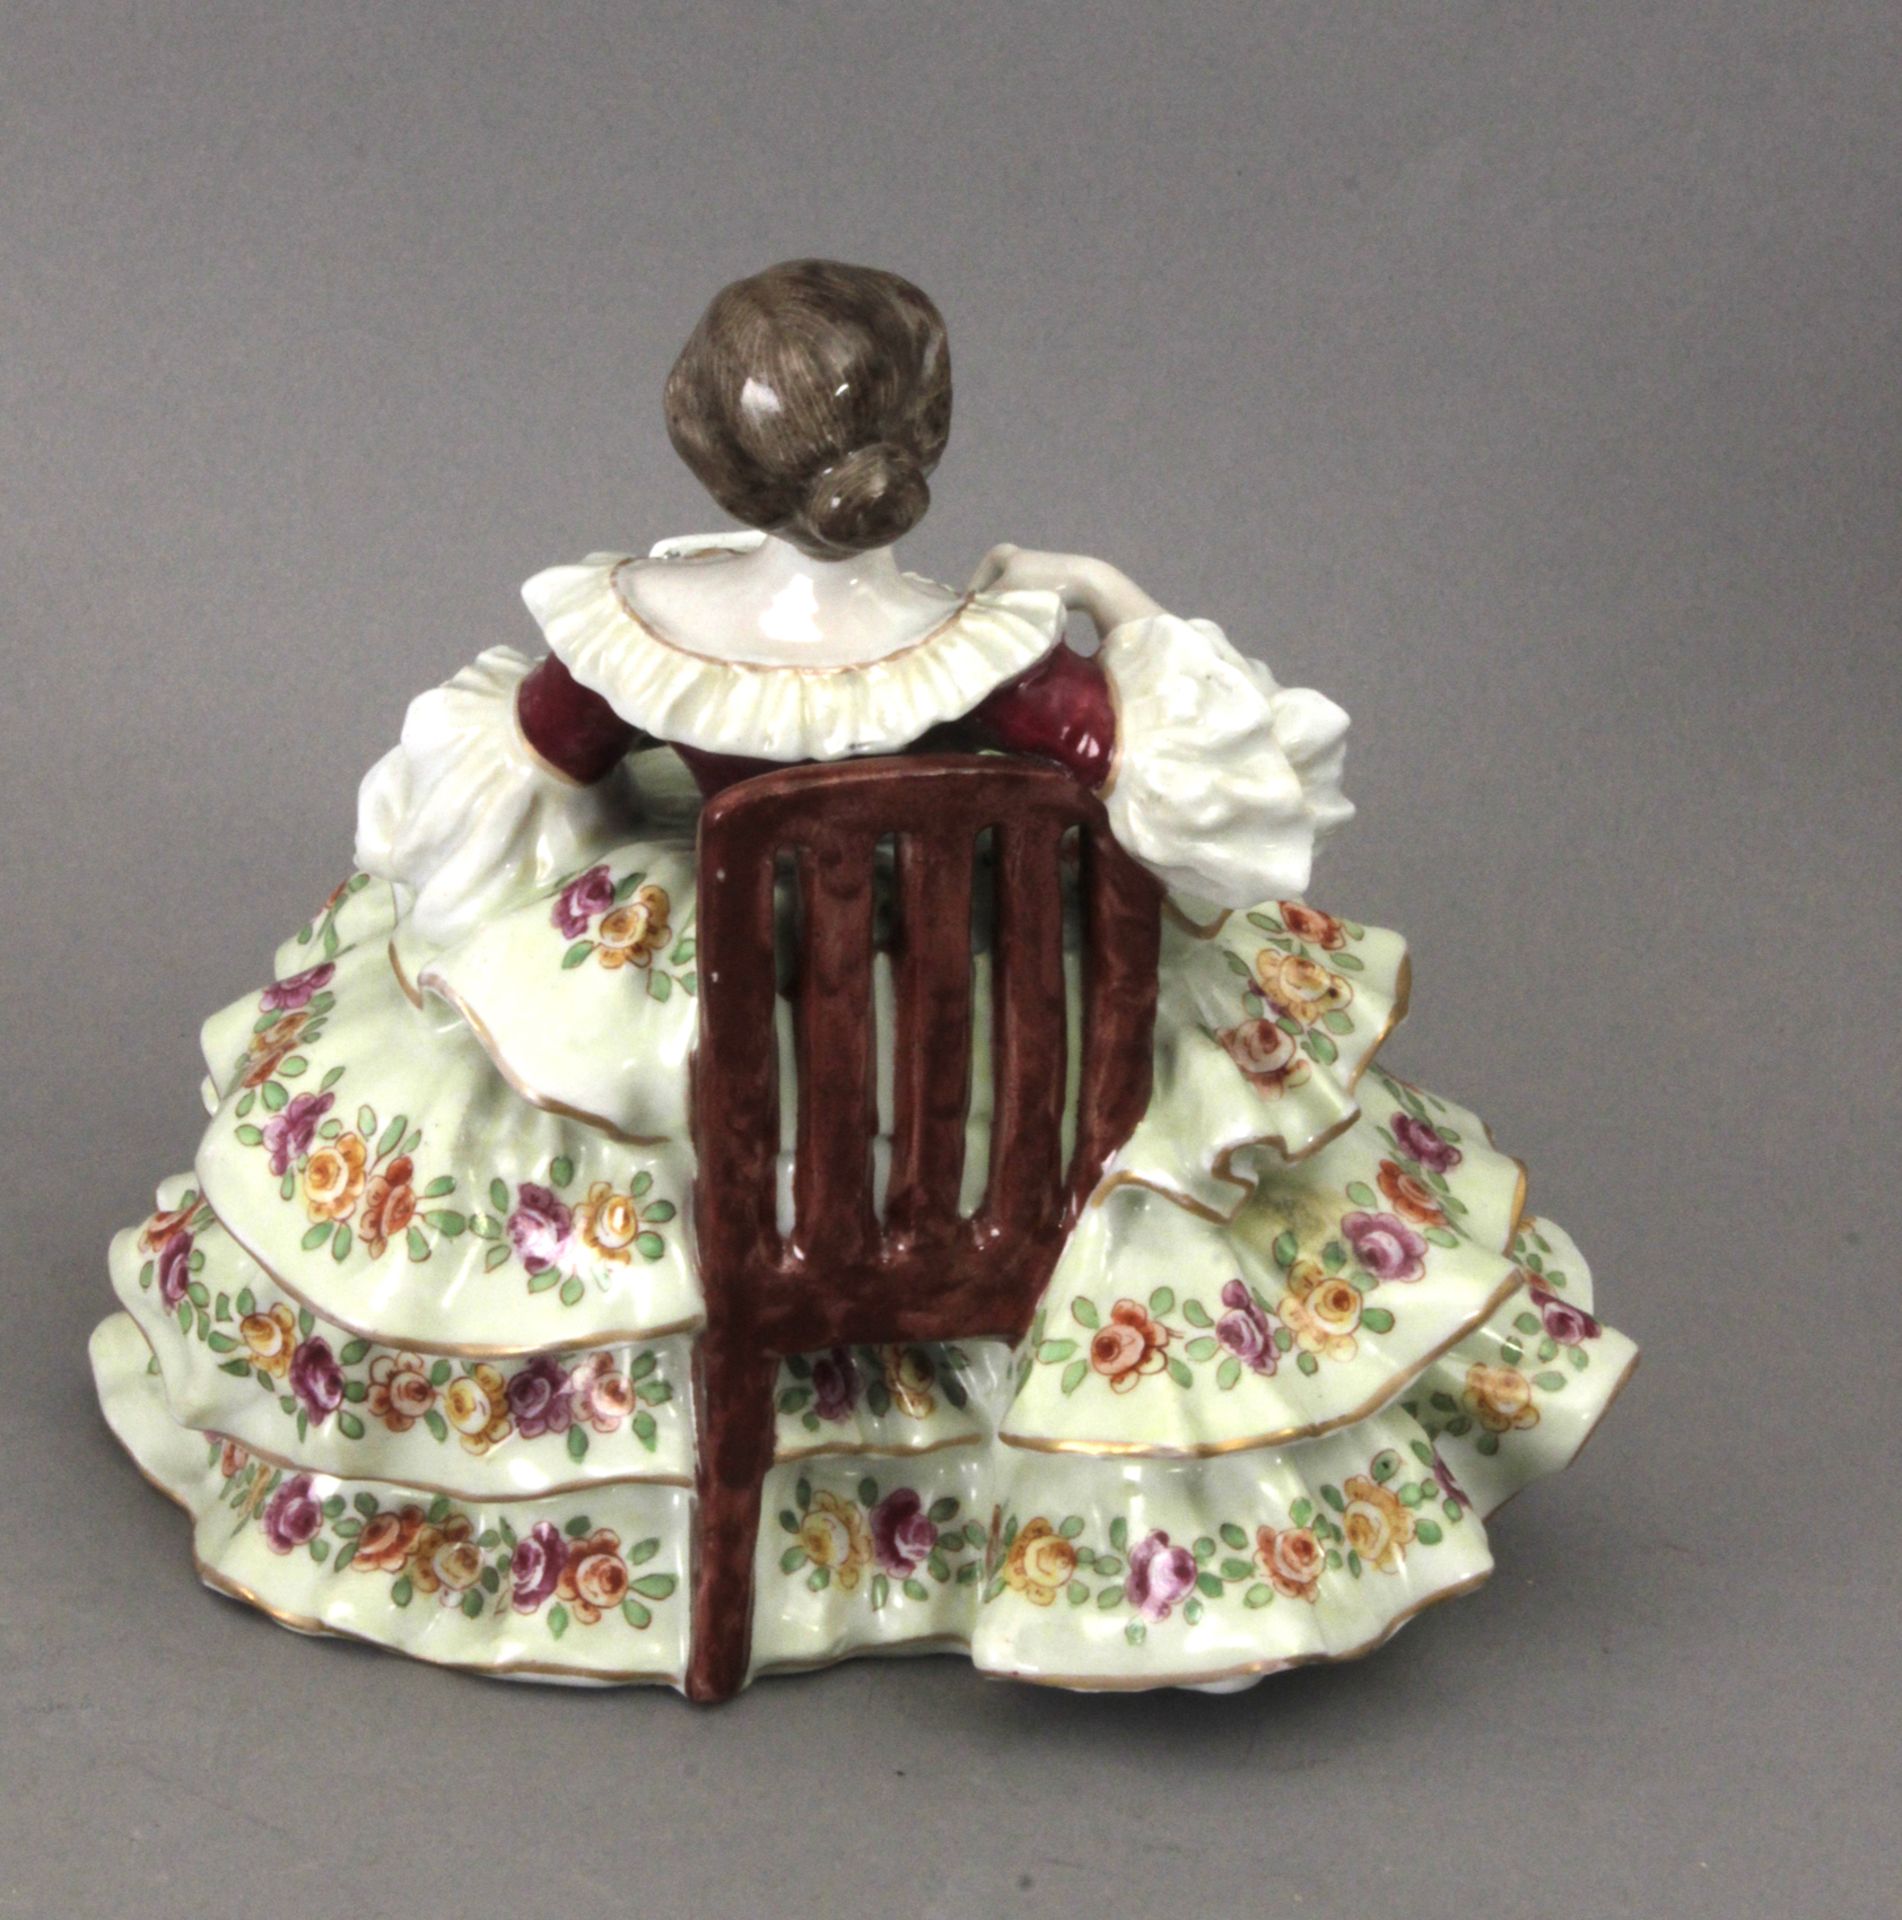 Early 20th century dame figurine in Von Schierholz porcelain - Bild 2 aus 2